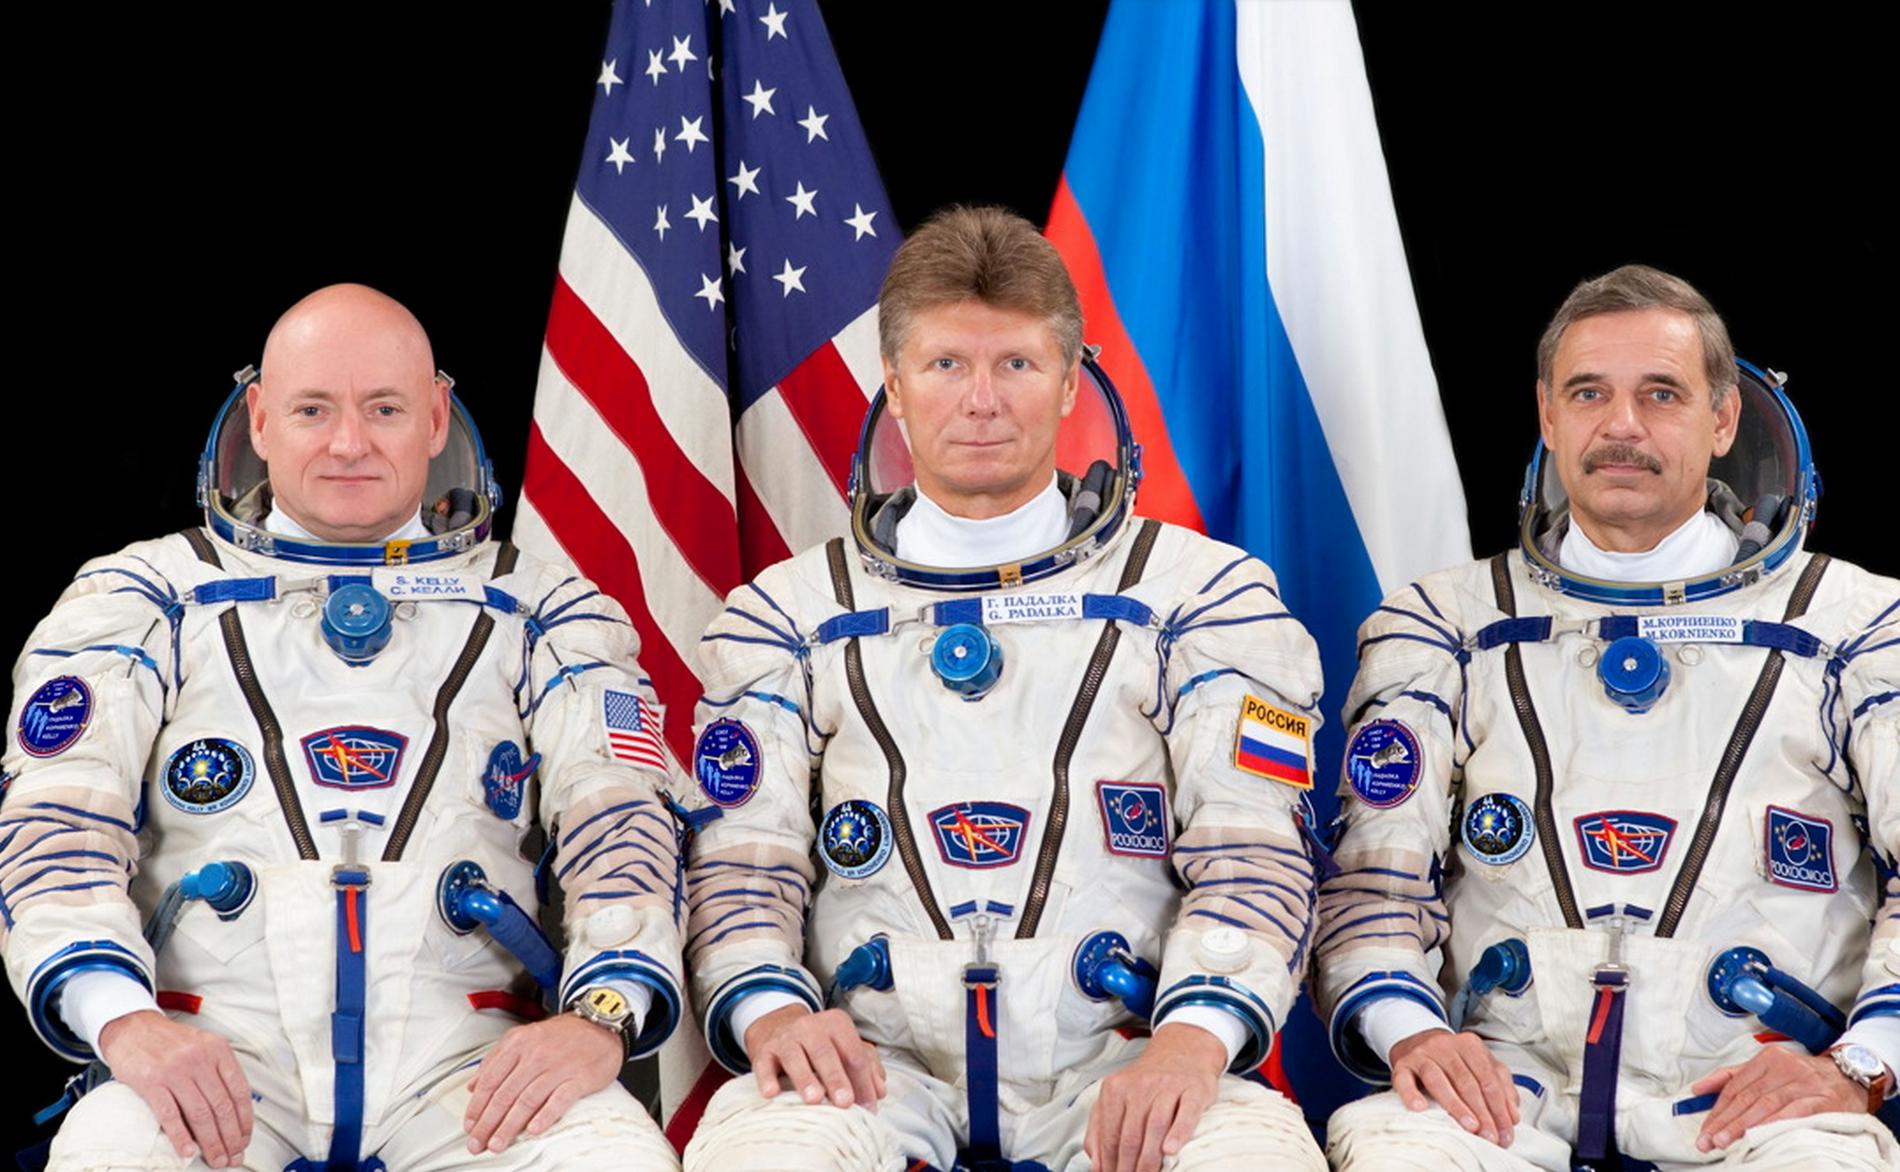 NASA astronauten Scott Kelly och kosmonauterna Gennady Padalka och Mikhail Kornienko.